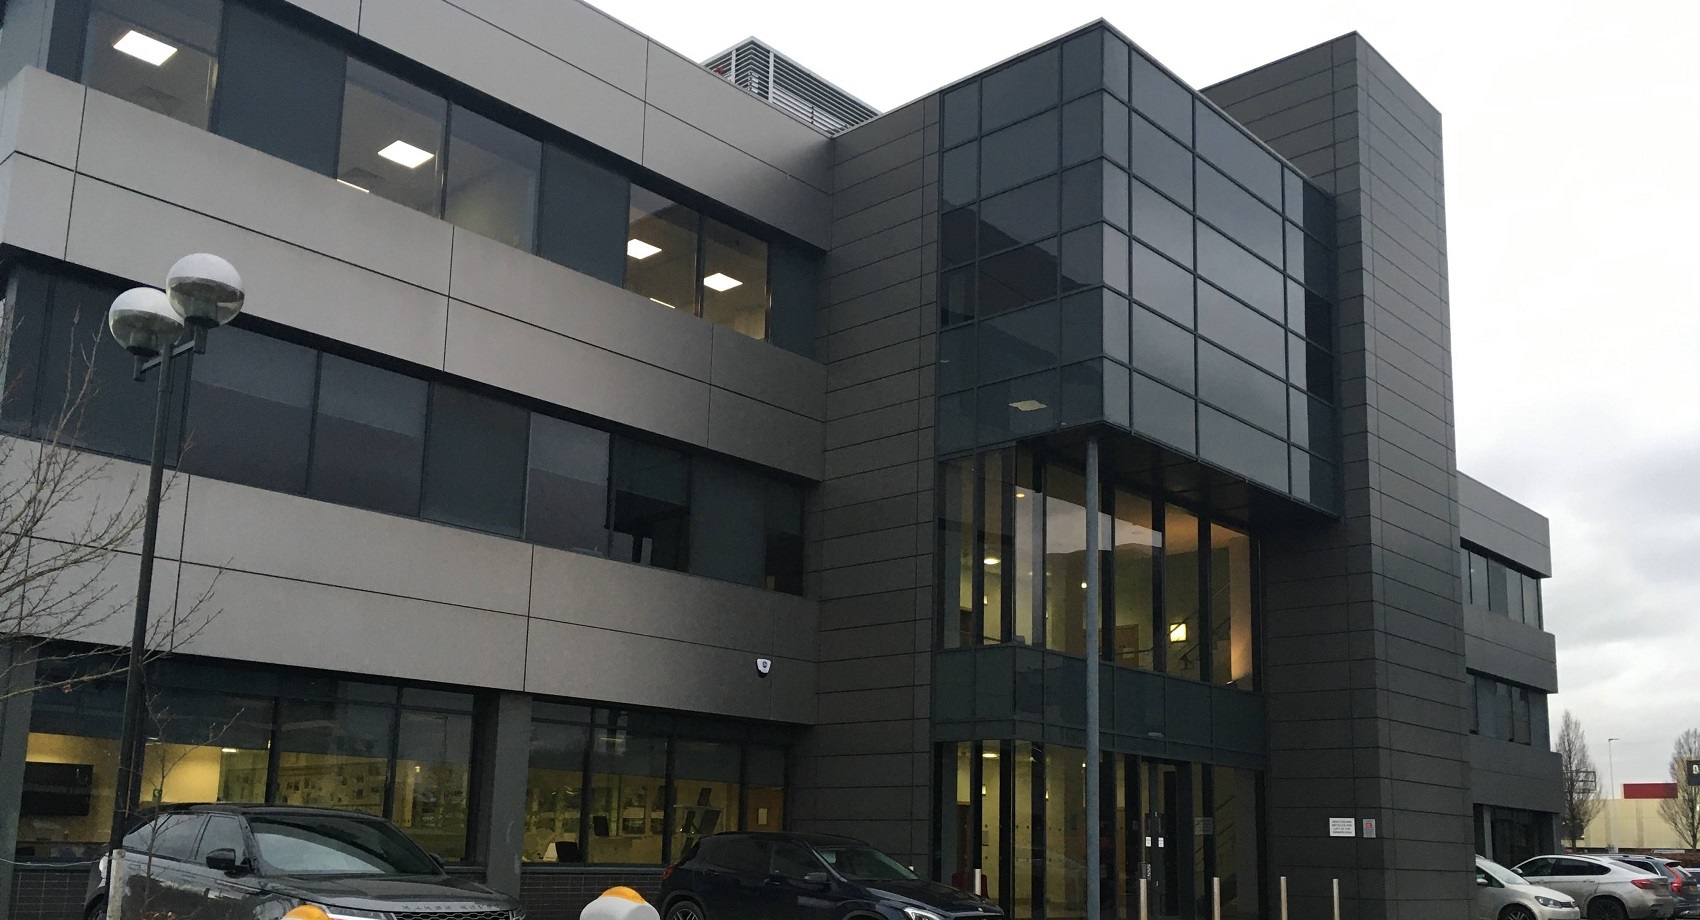 Multi let office buildings in Leeds